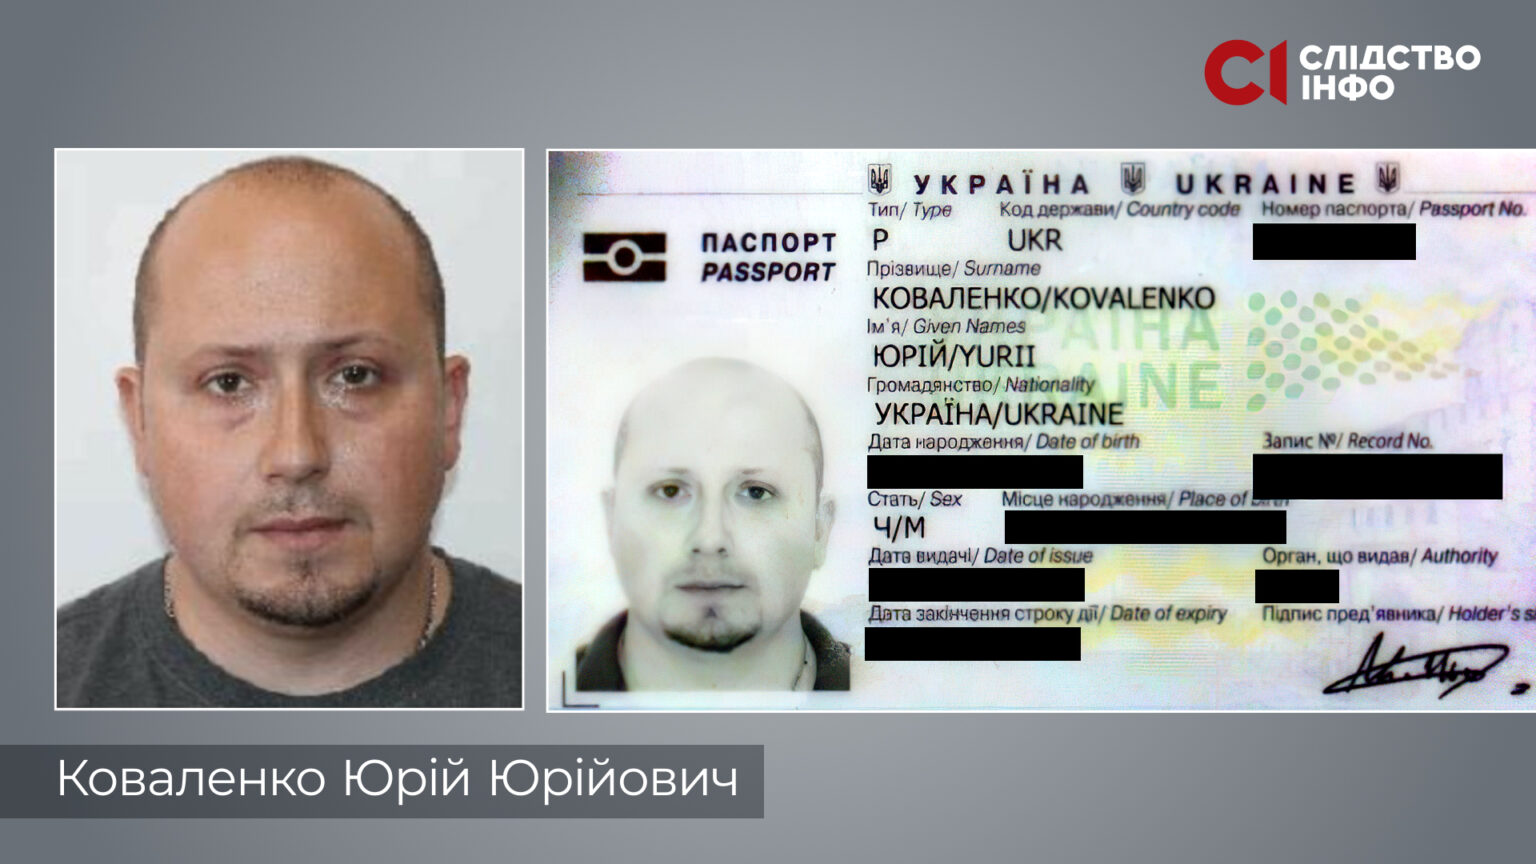 Скан паспорта Юрия Коваленко